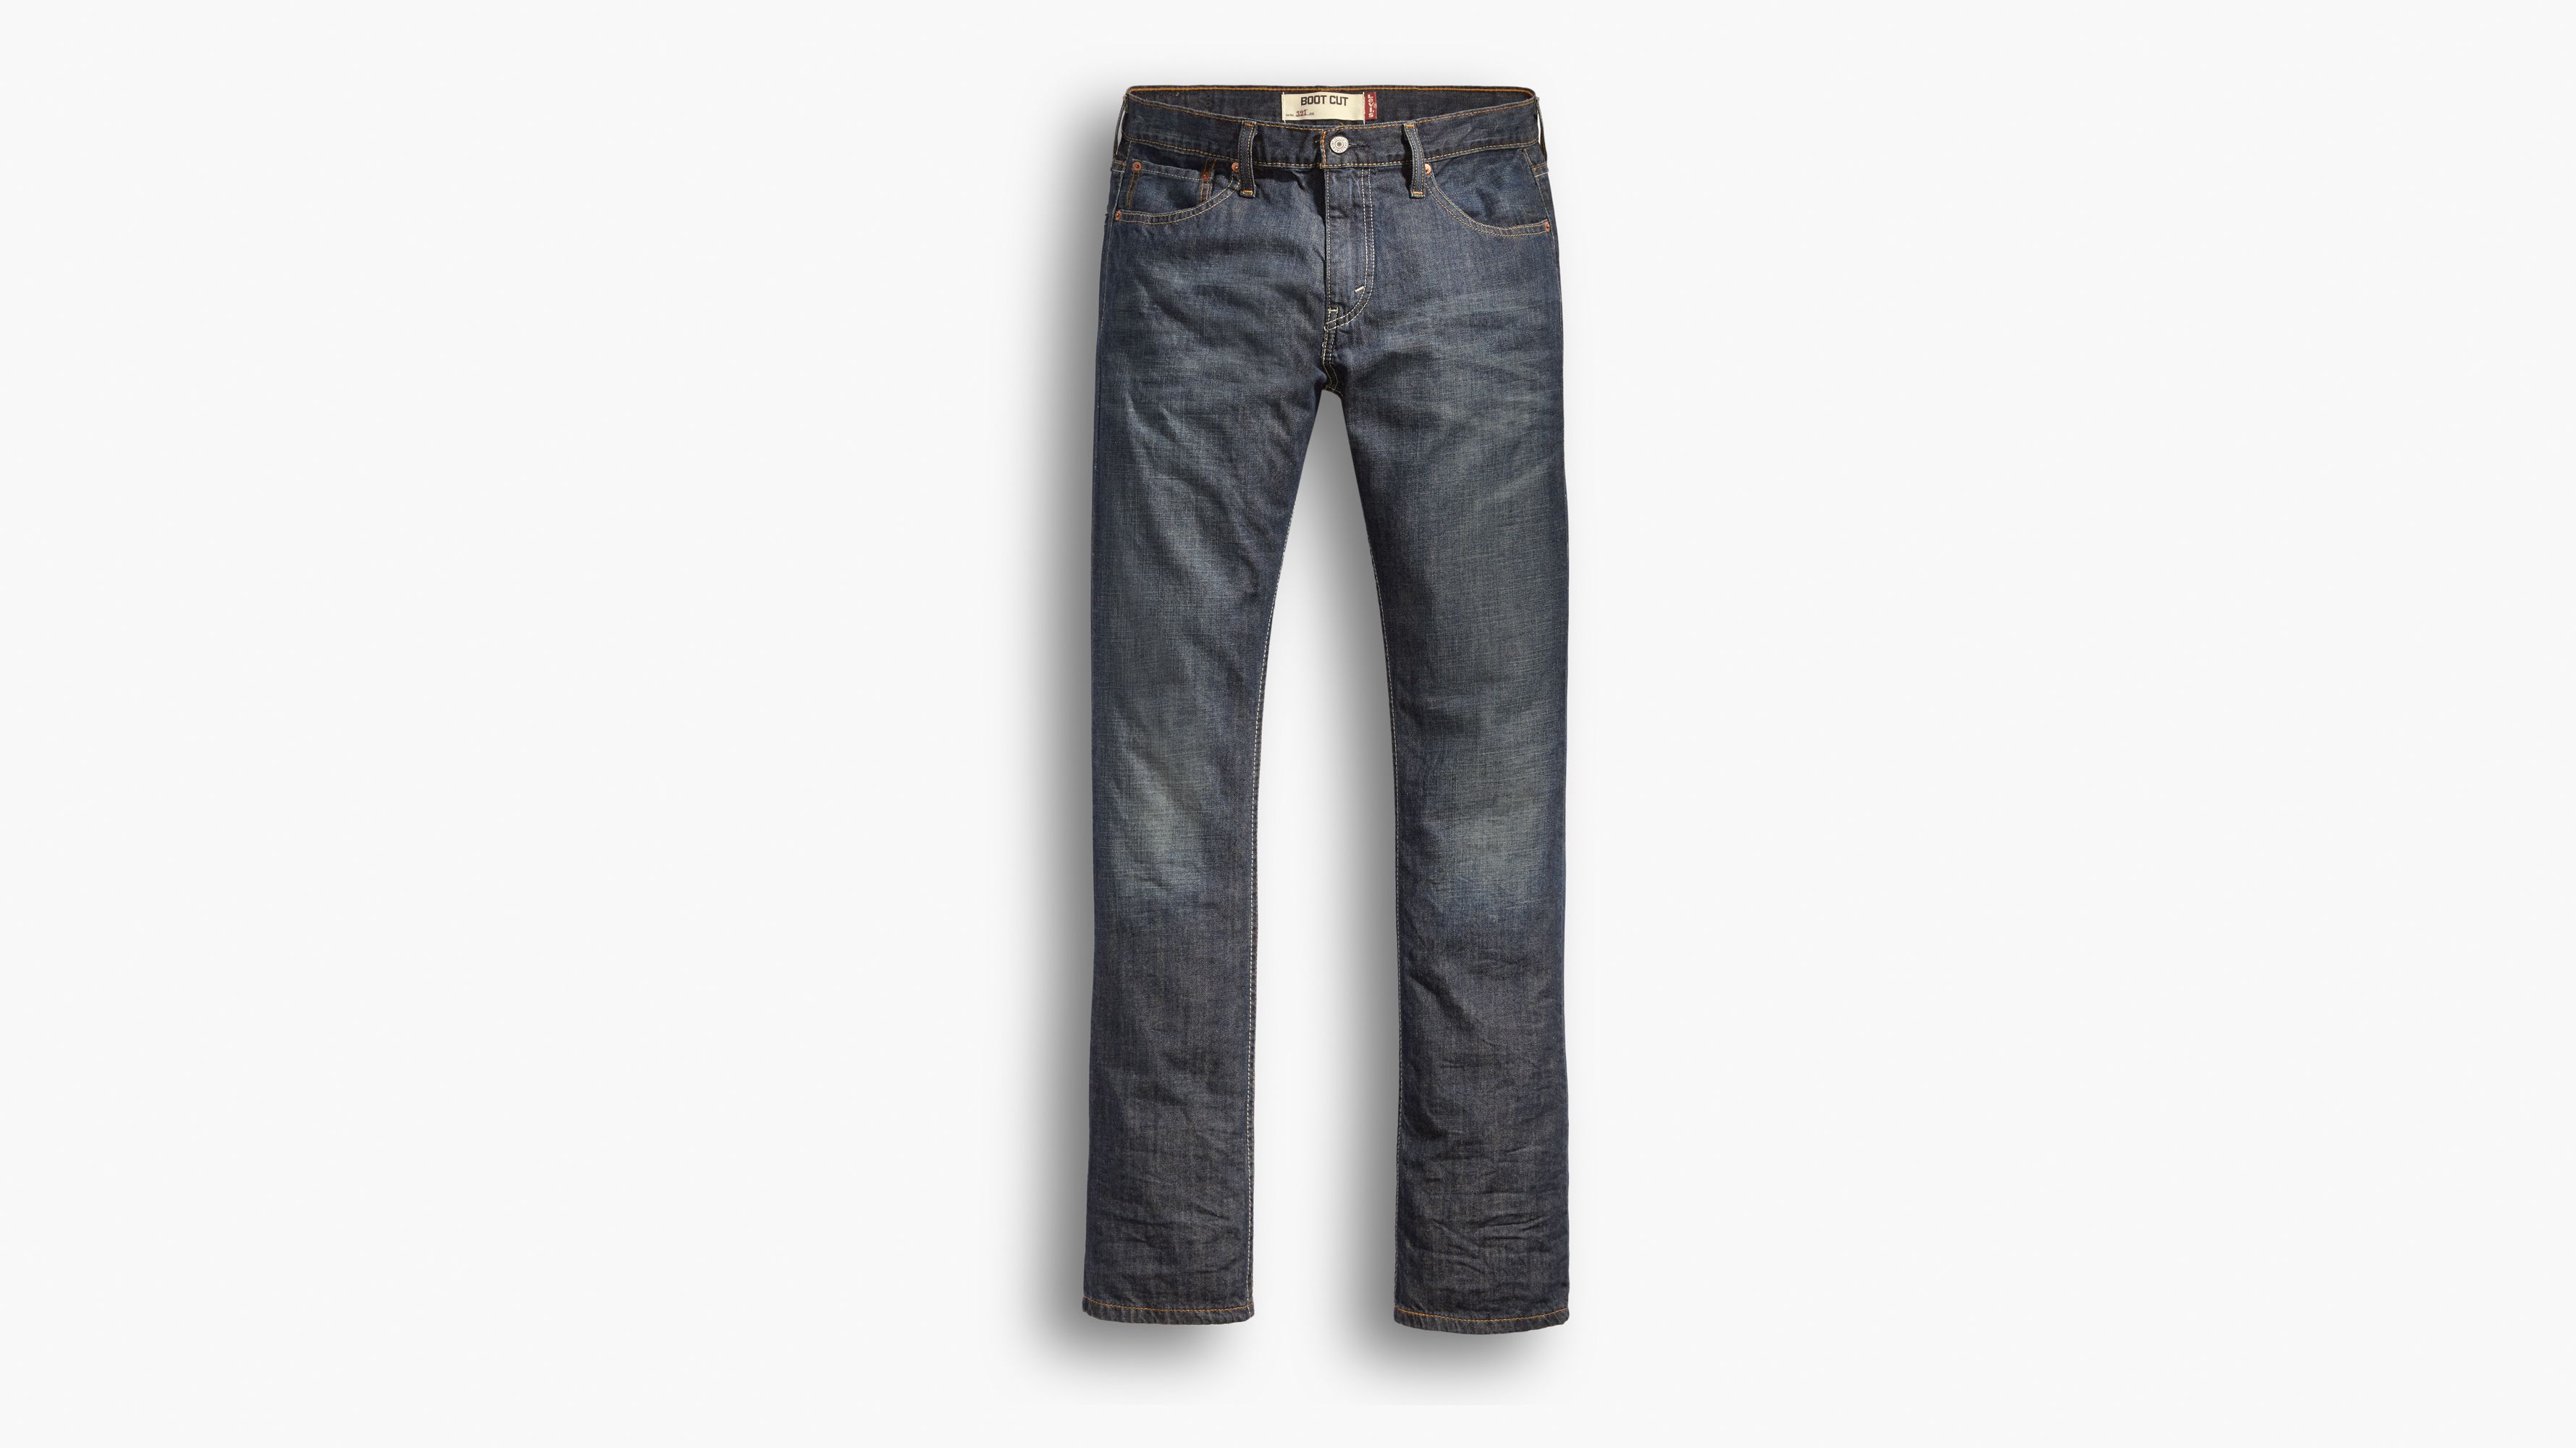 527™ Slim Boot Cut Men's Jeans - Dark 